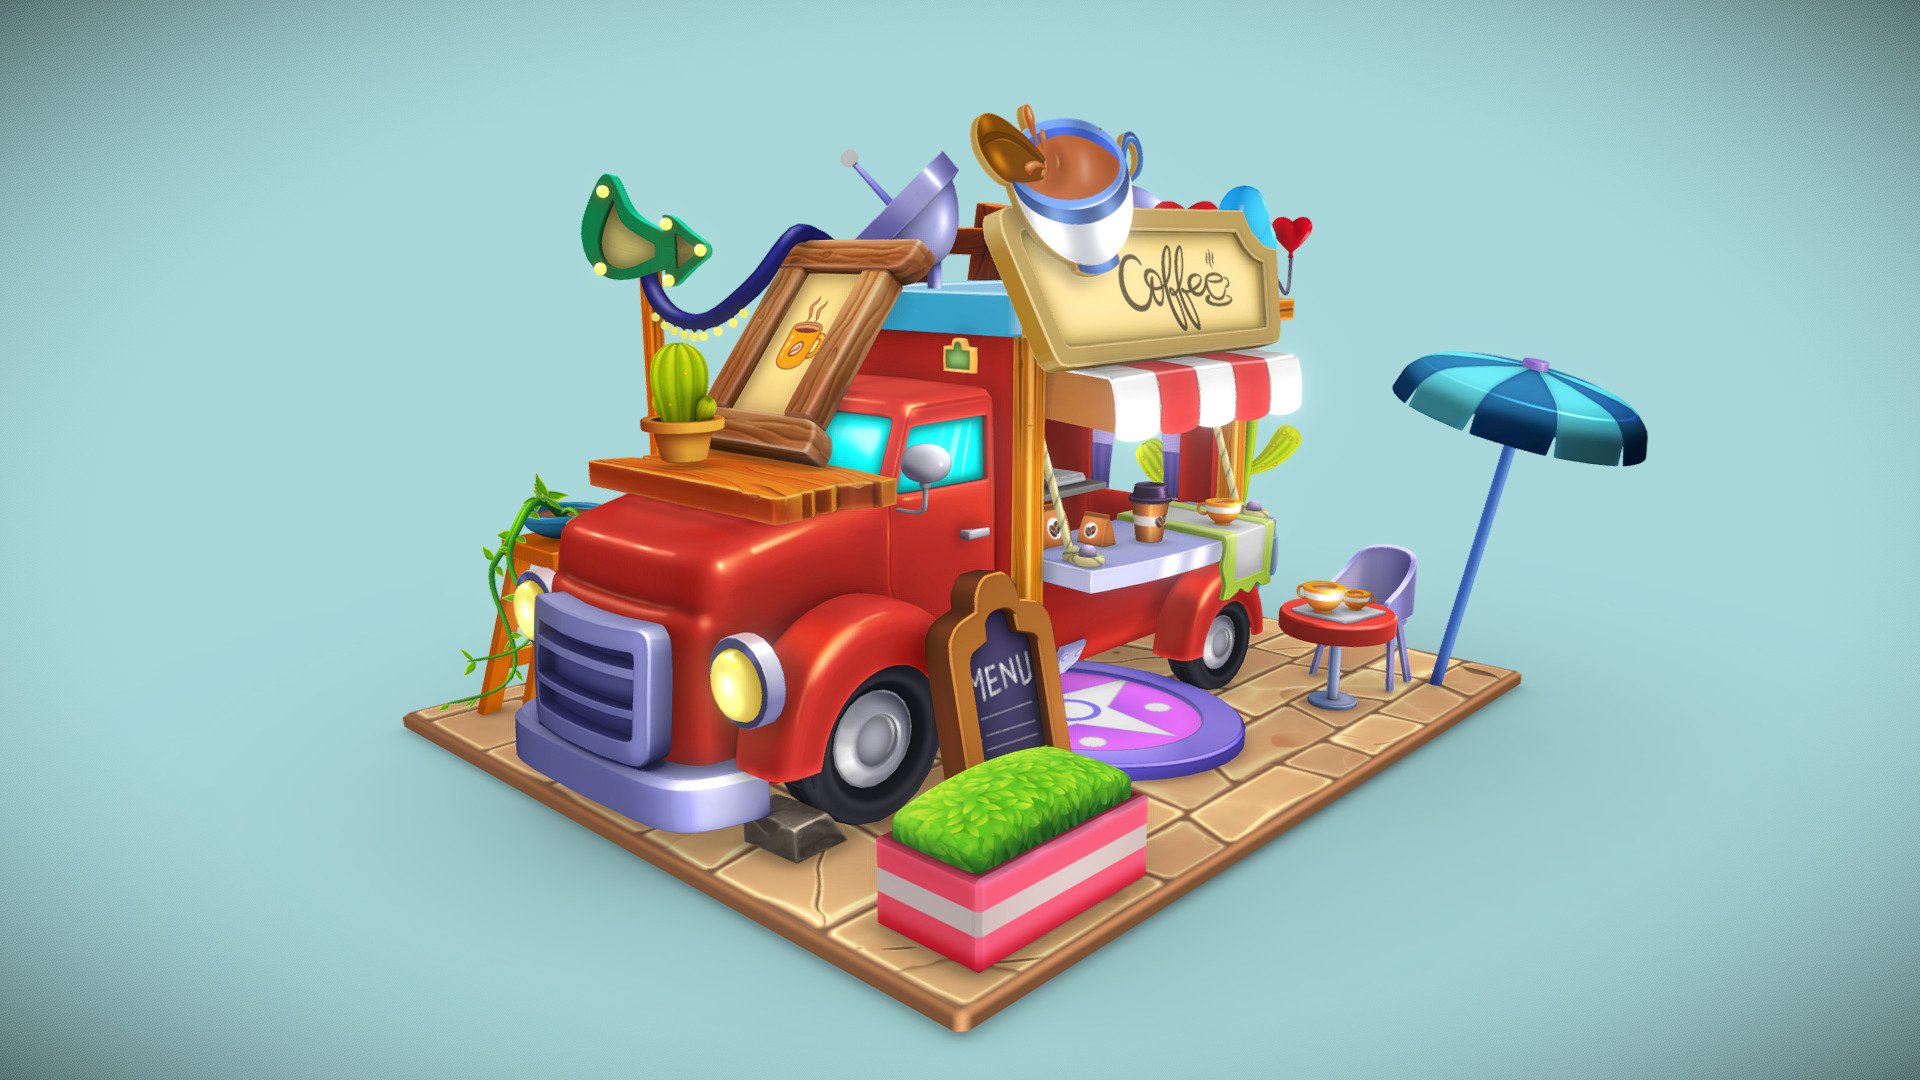 juegostudio.com - Food Truck - 3D model by JuegoStudio 3d model